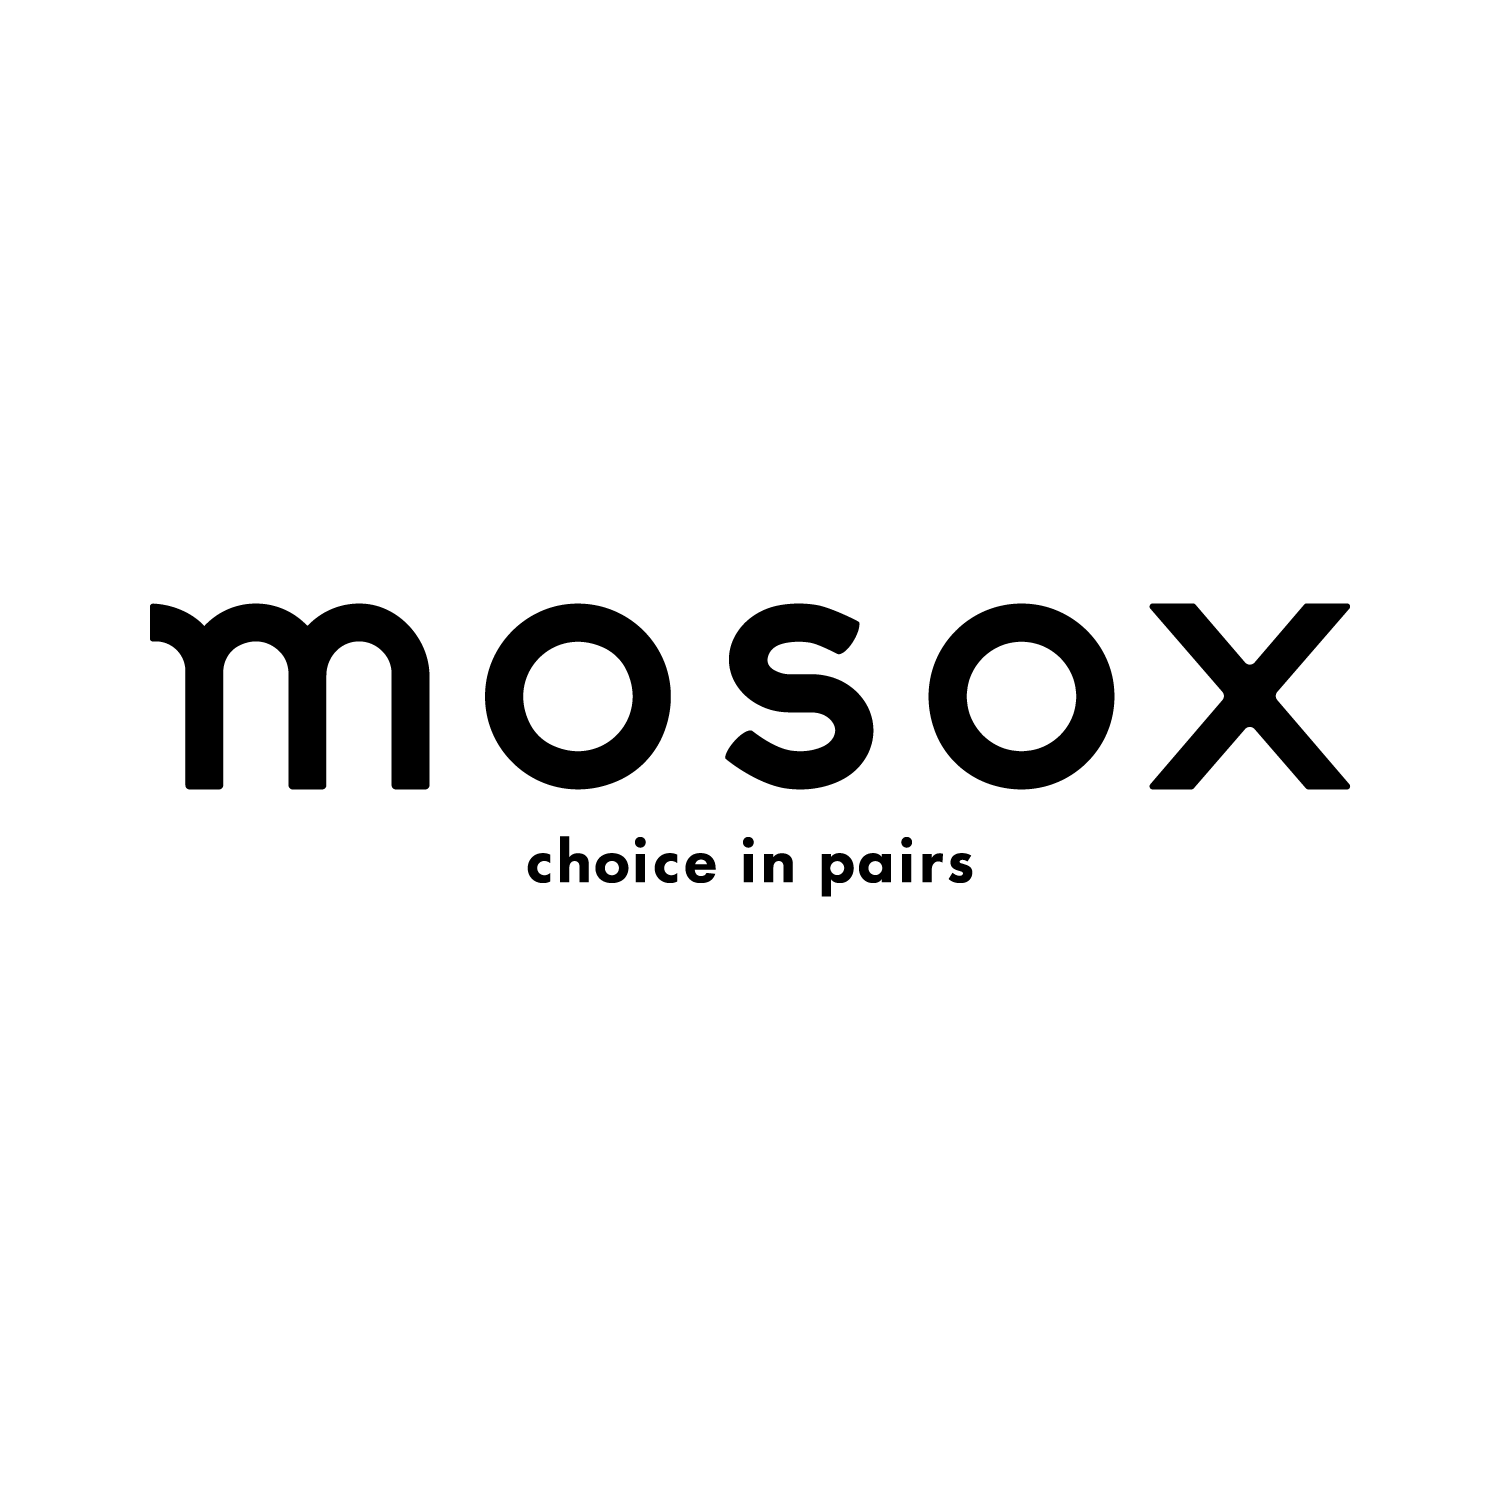 mosox_logo.png__PID:5a69de2f-d3c9-4a90-a058-039c07752ecd